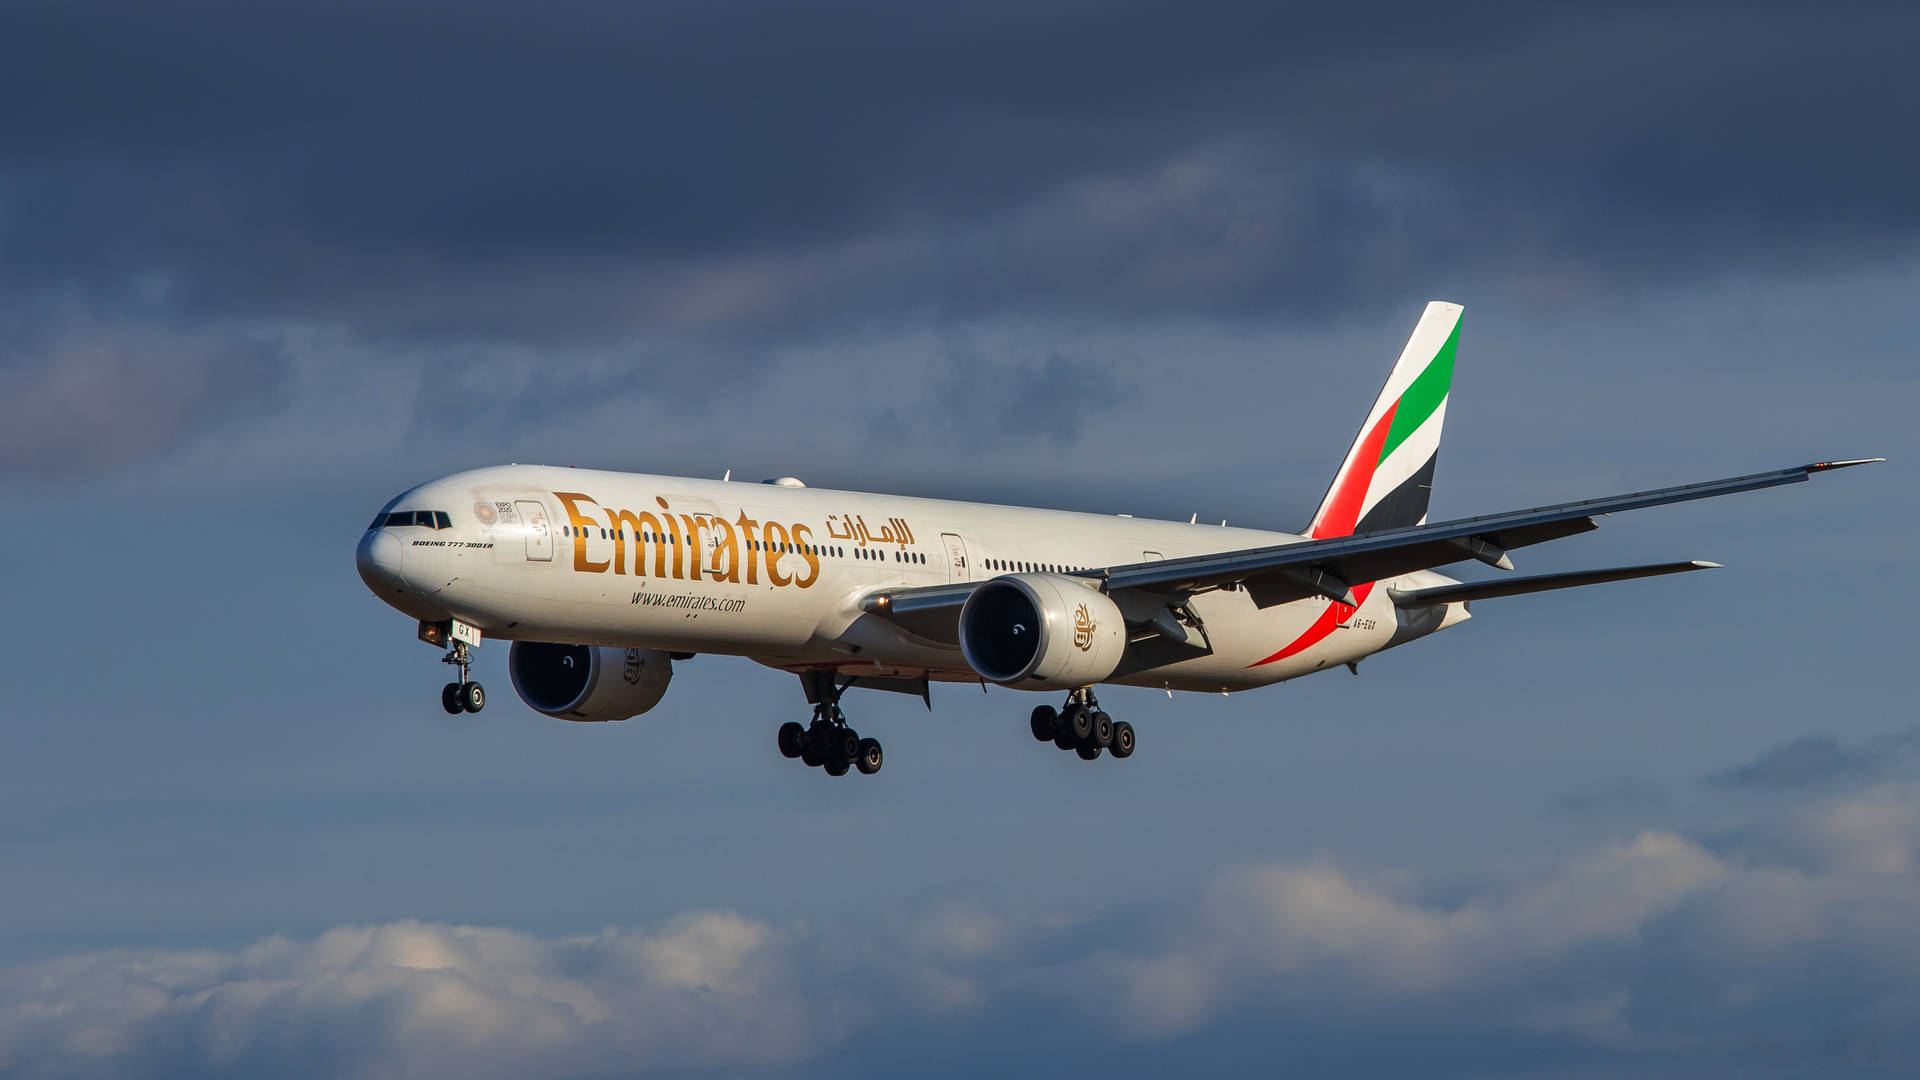 Hd Emirates Plane Flying Background